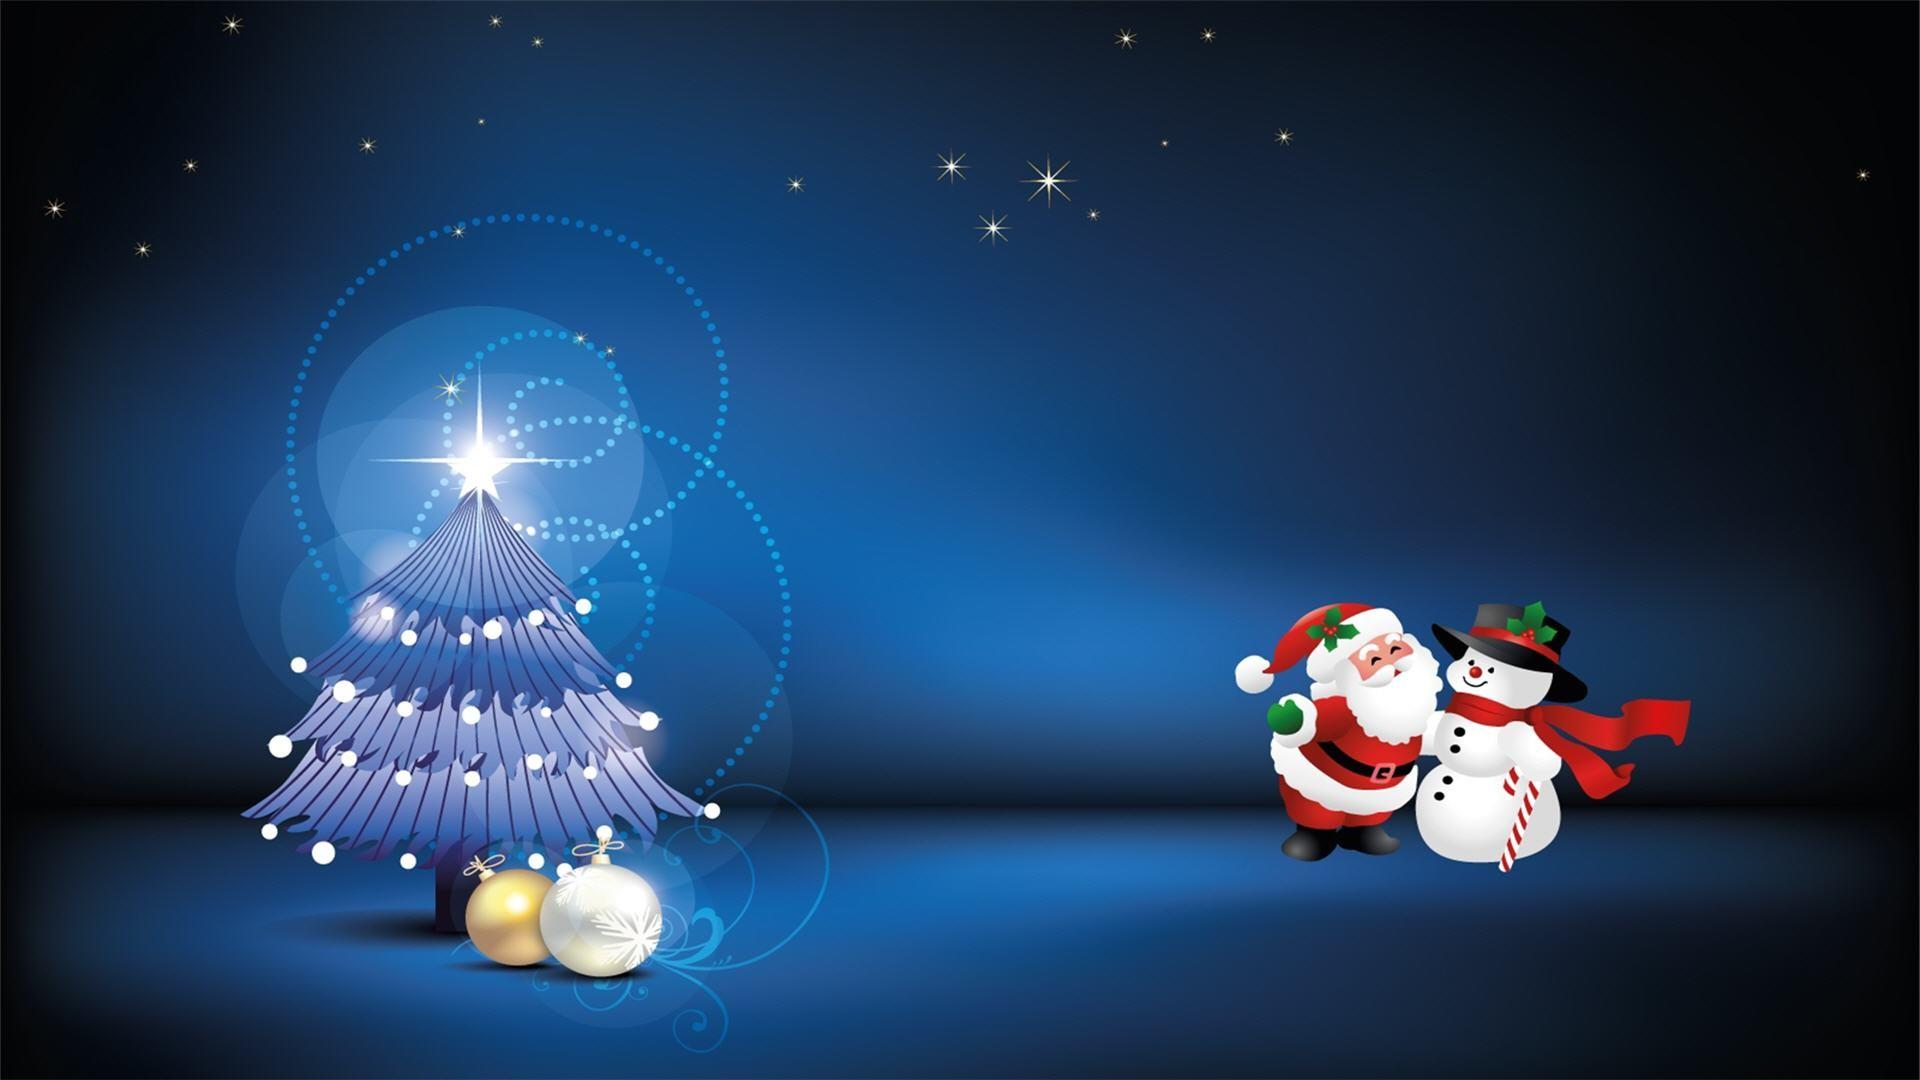 Animated Christmas Wallpapers - Top Free Animated Christmas ...